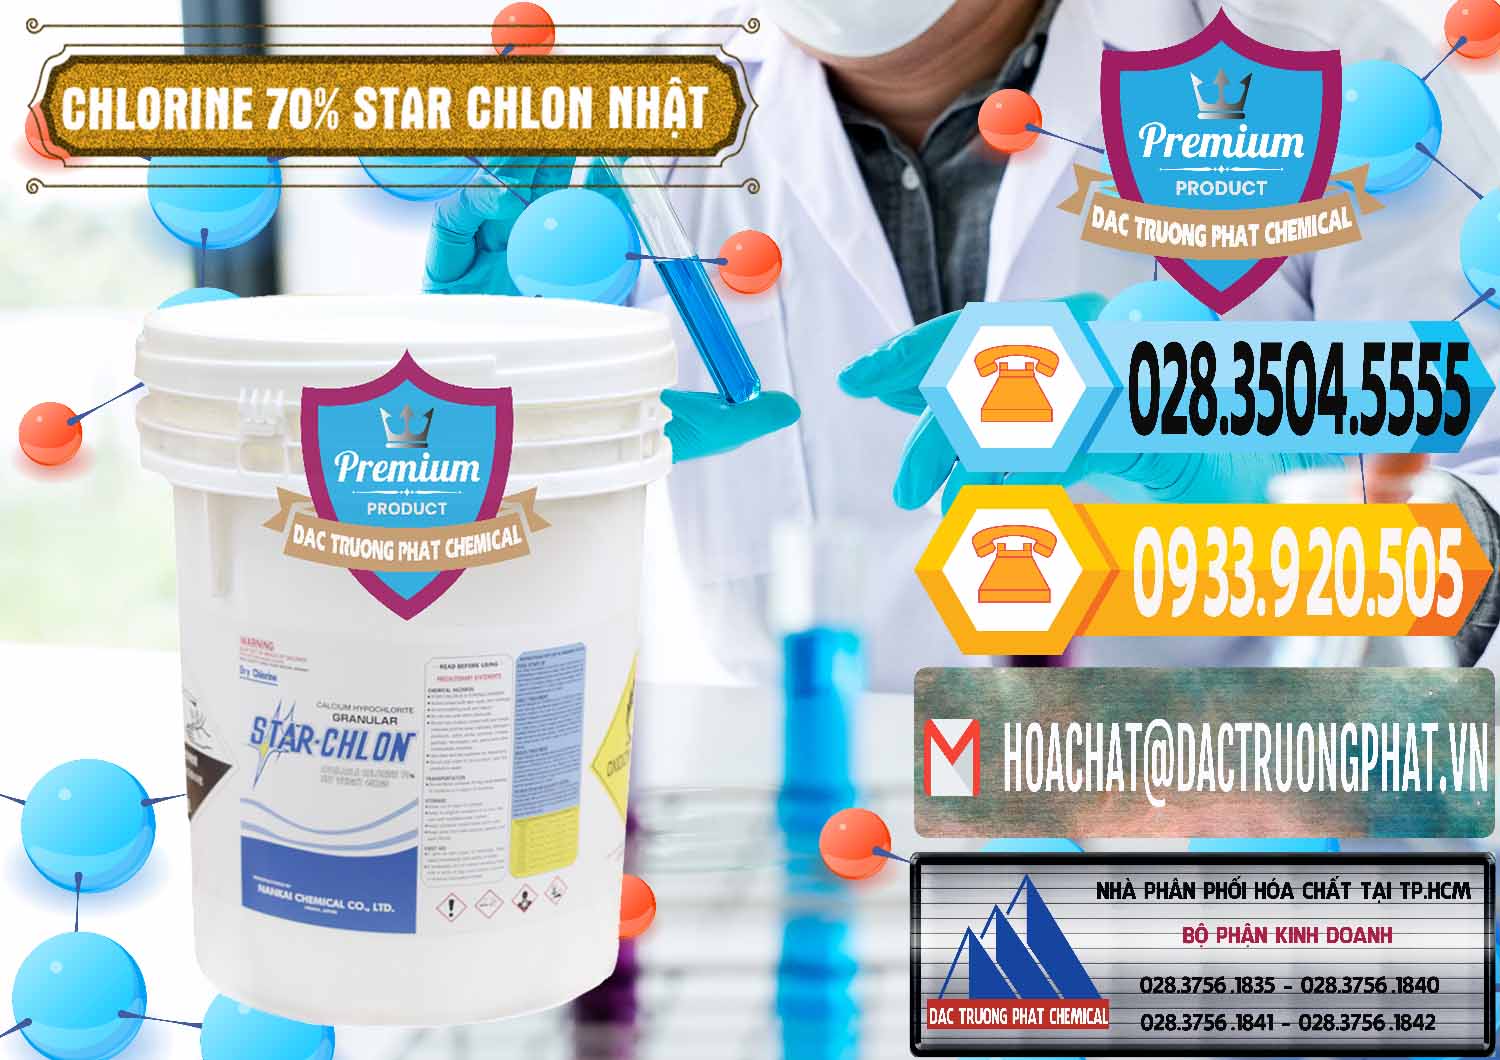 Công ty chuyên cung ứng & bán Clorin – Chlorine 70% Star Chlon Nhật Bản Japan - 0243 - Công ty chuyên cung cấp _ bán hóa chất tại TP.HCM - hoachattayrua.net